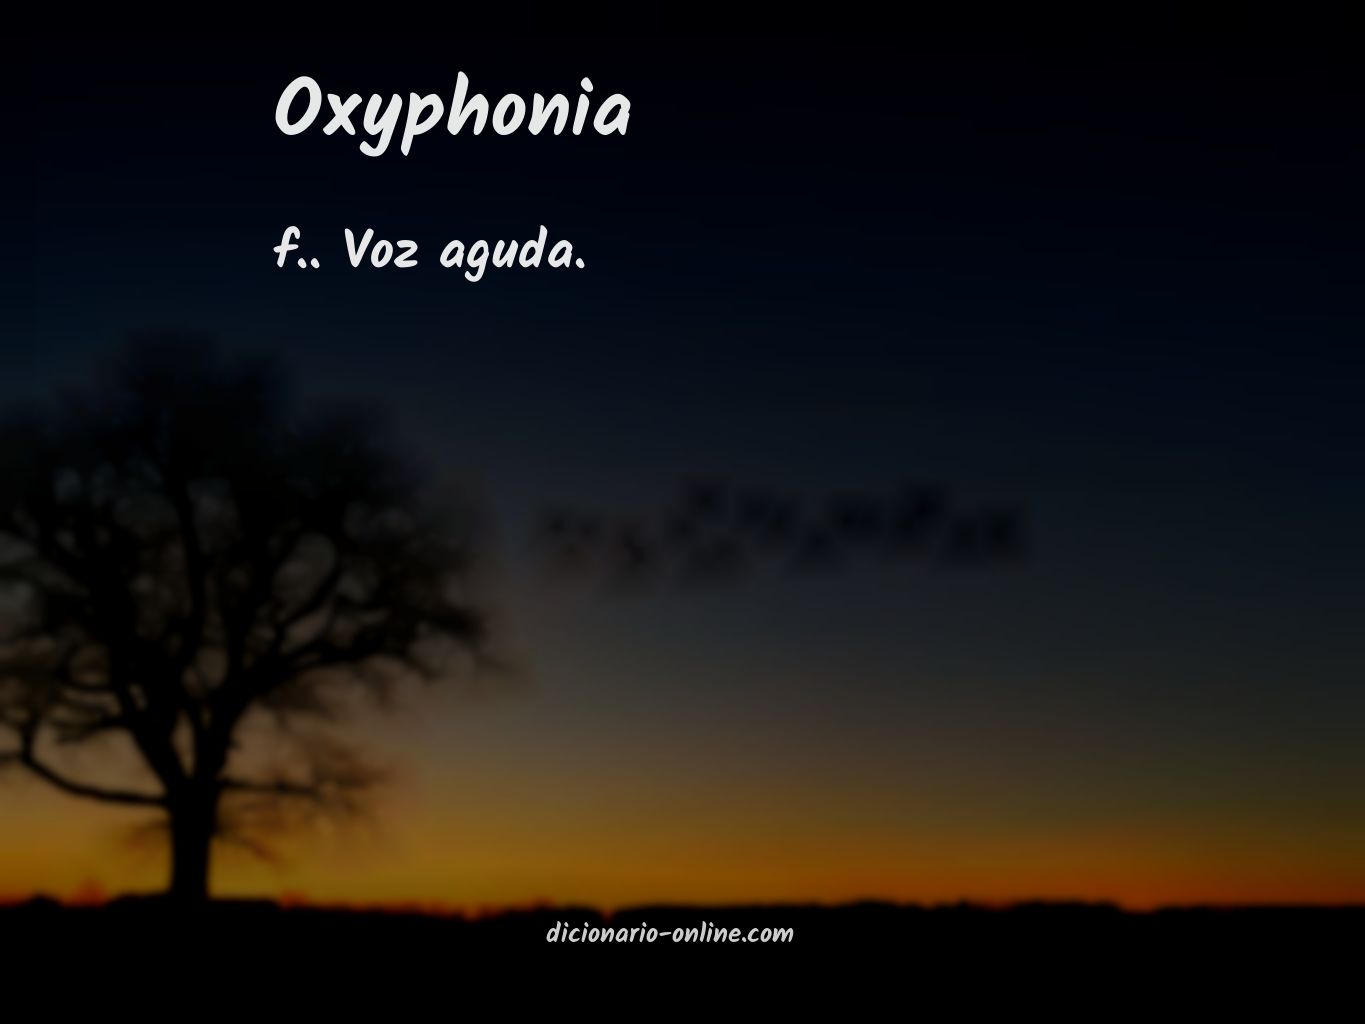 Significado de oxyphonia